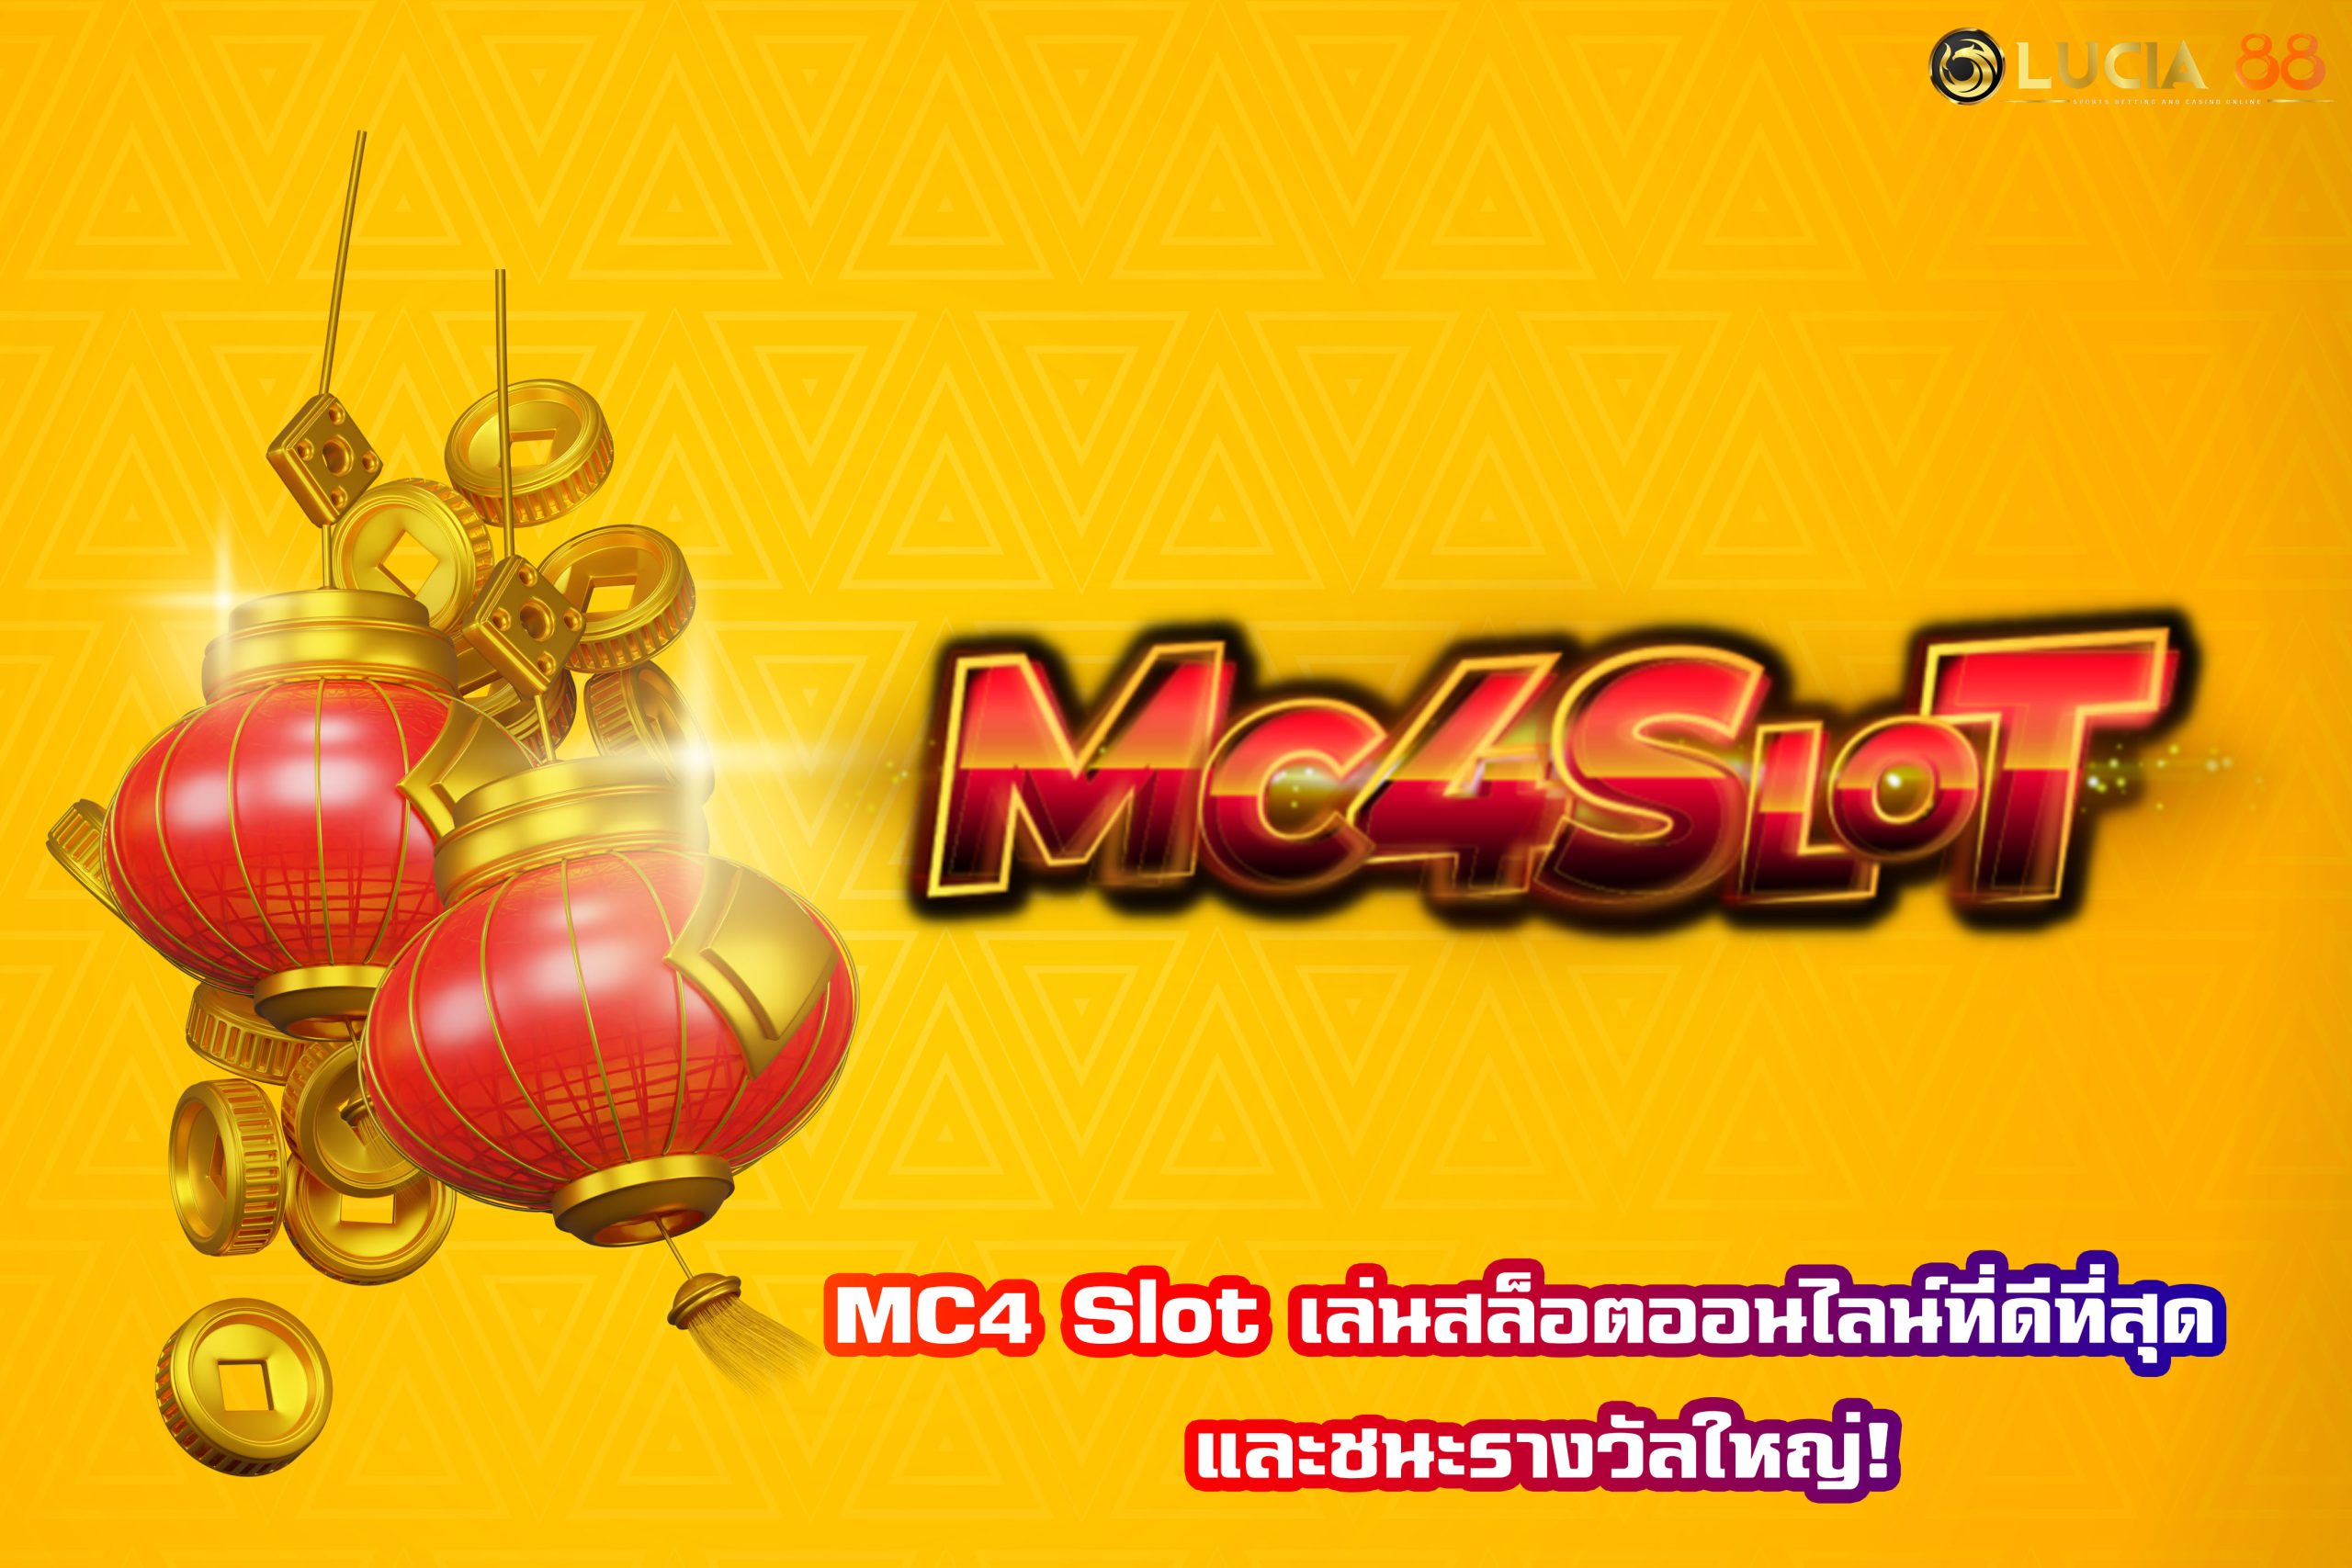 MC4 Slot เล่นสล็อตออนไลน์ที่ดีที่สุด และชนะรางวัลใหญ่!